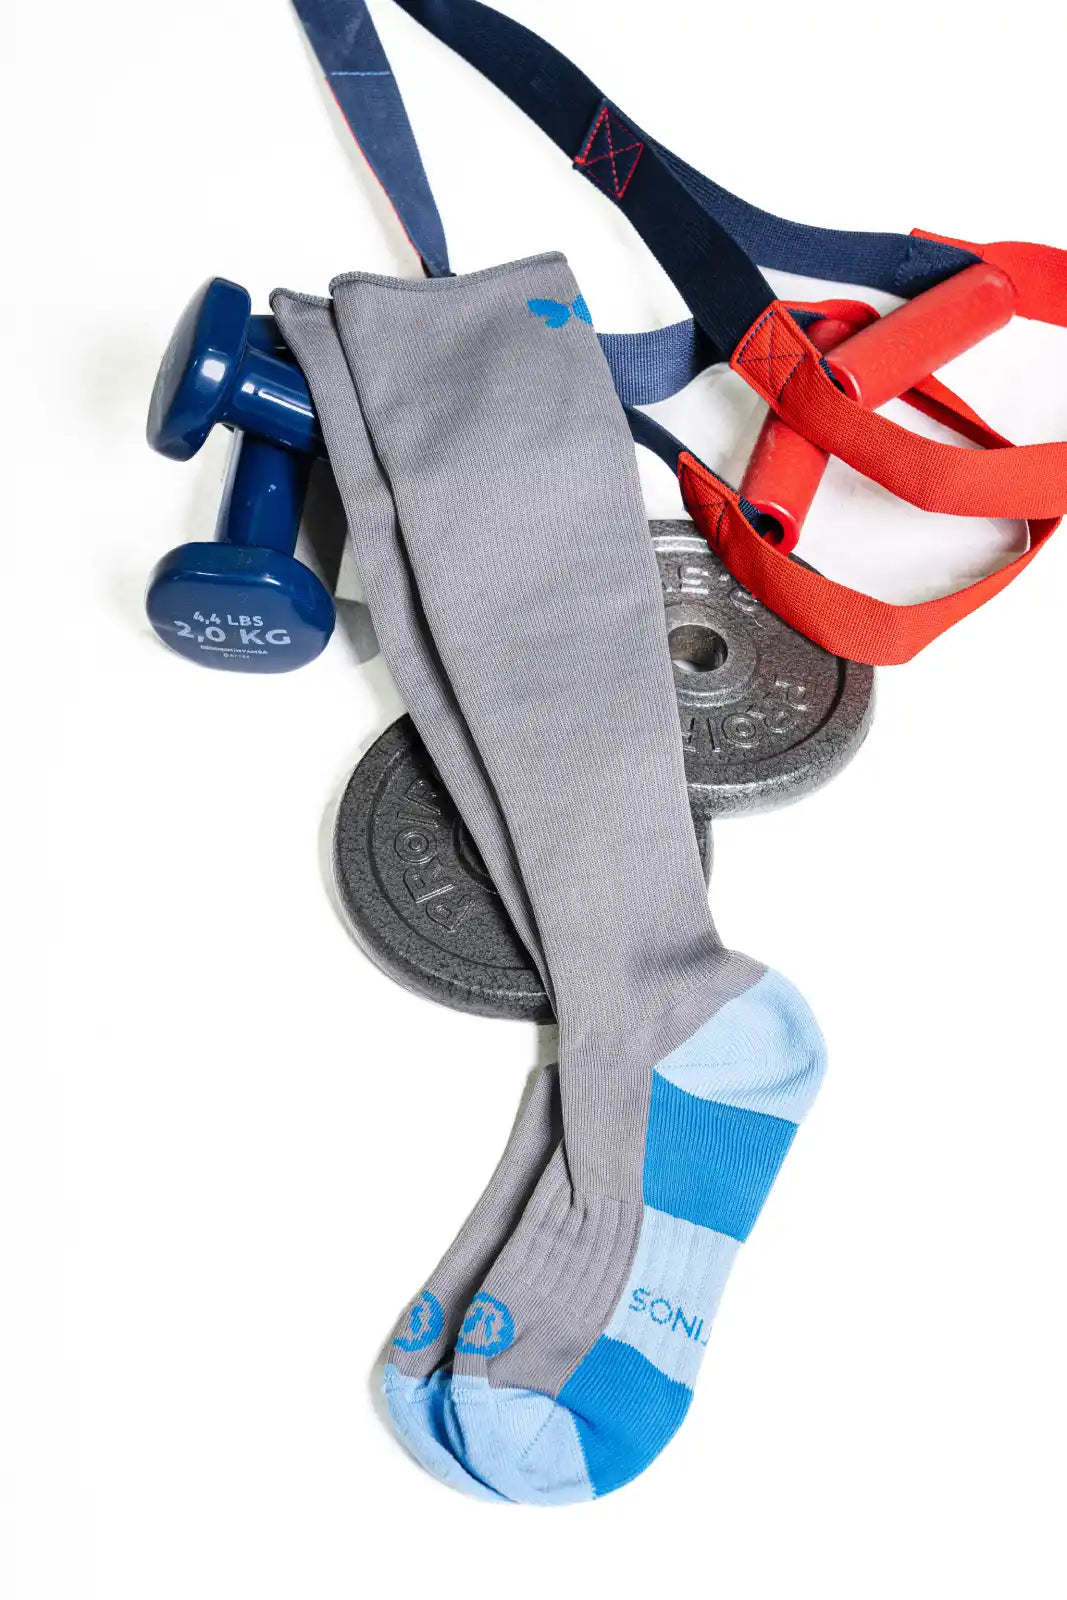 Calcetines compresivos para deporte y recuperación muscular